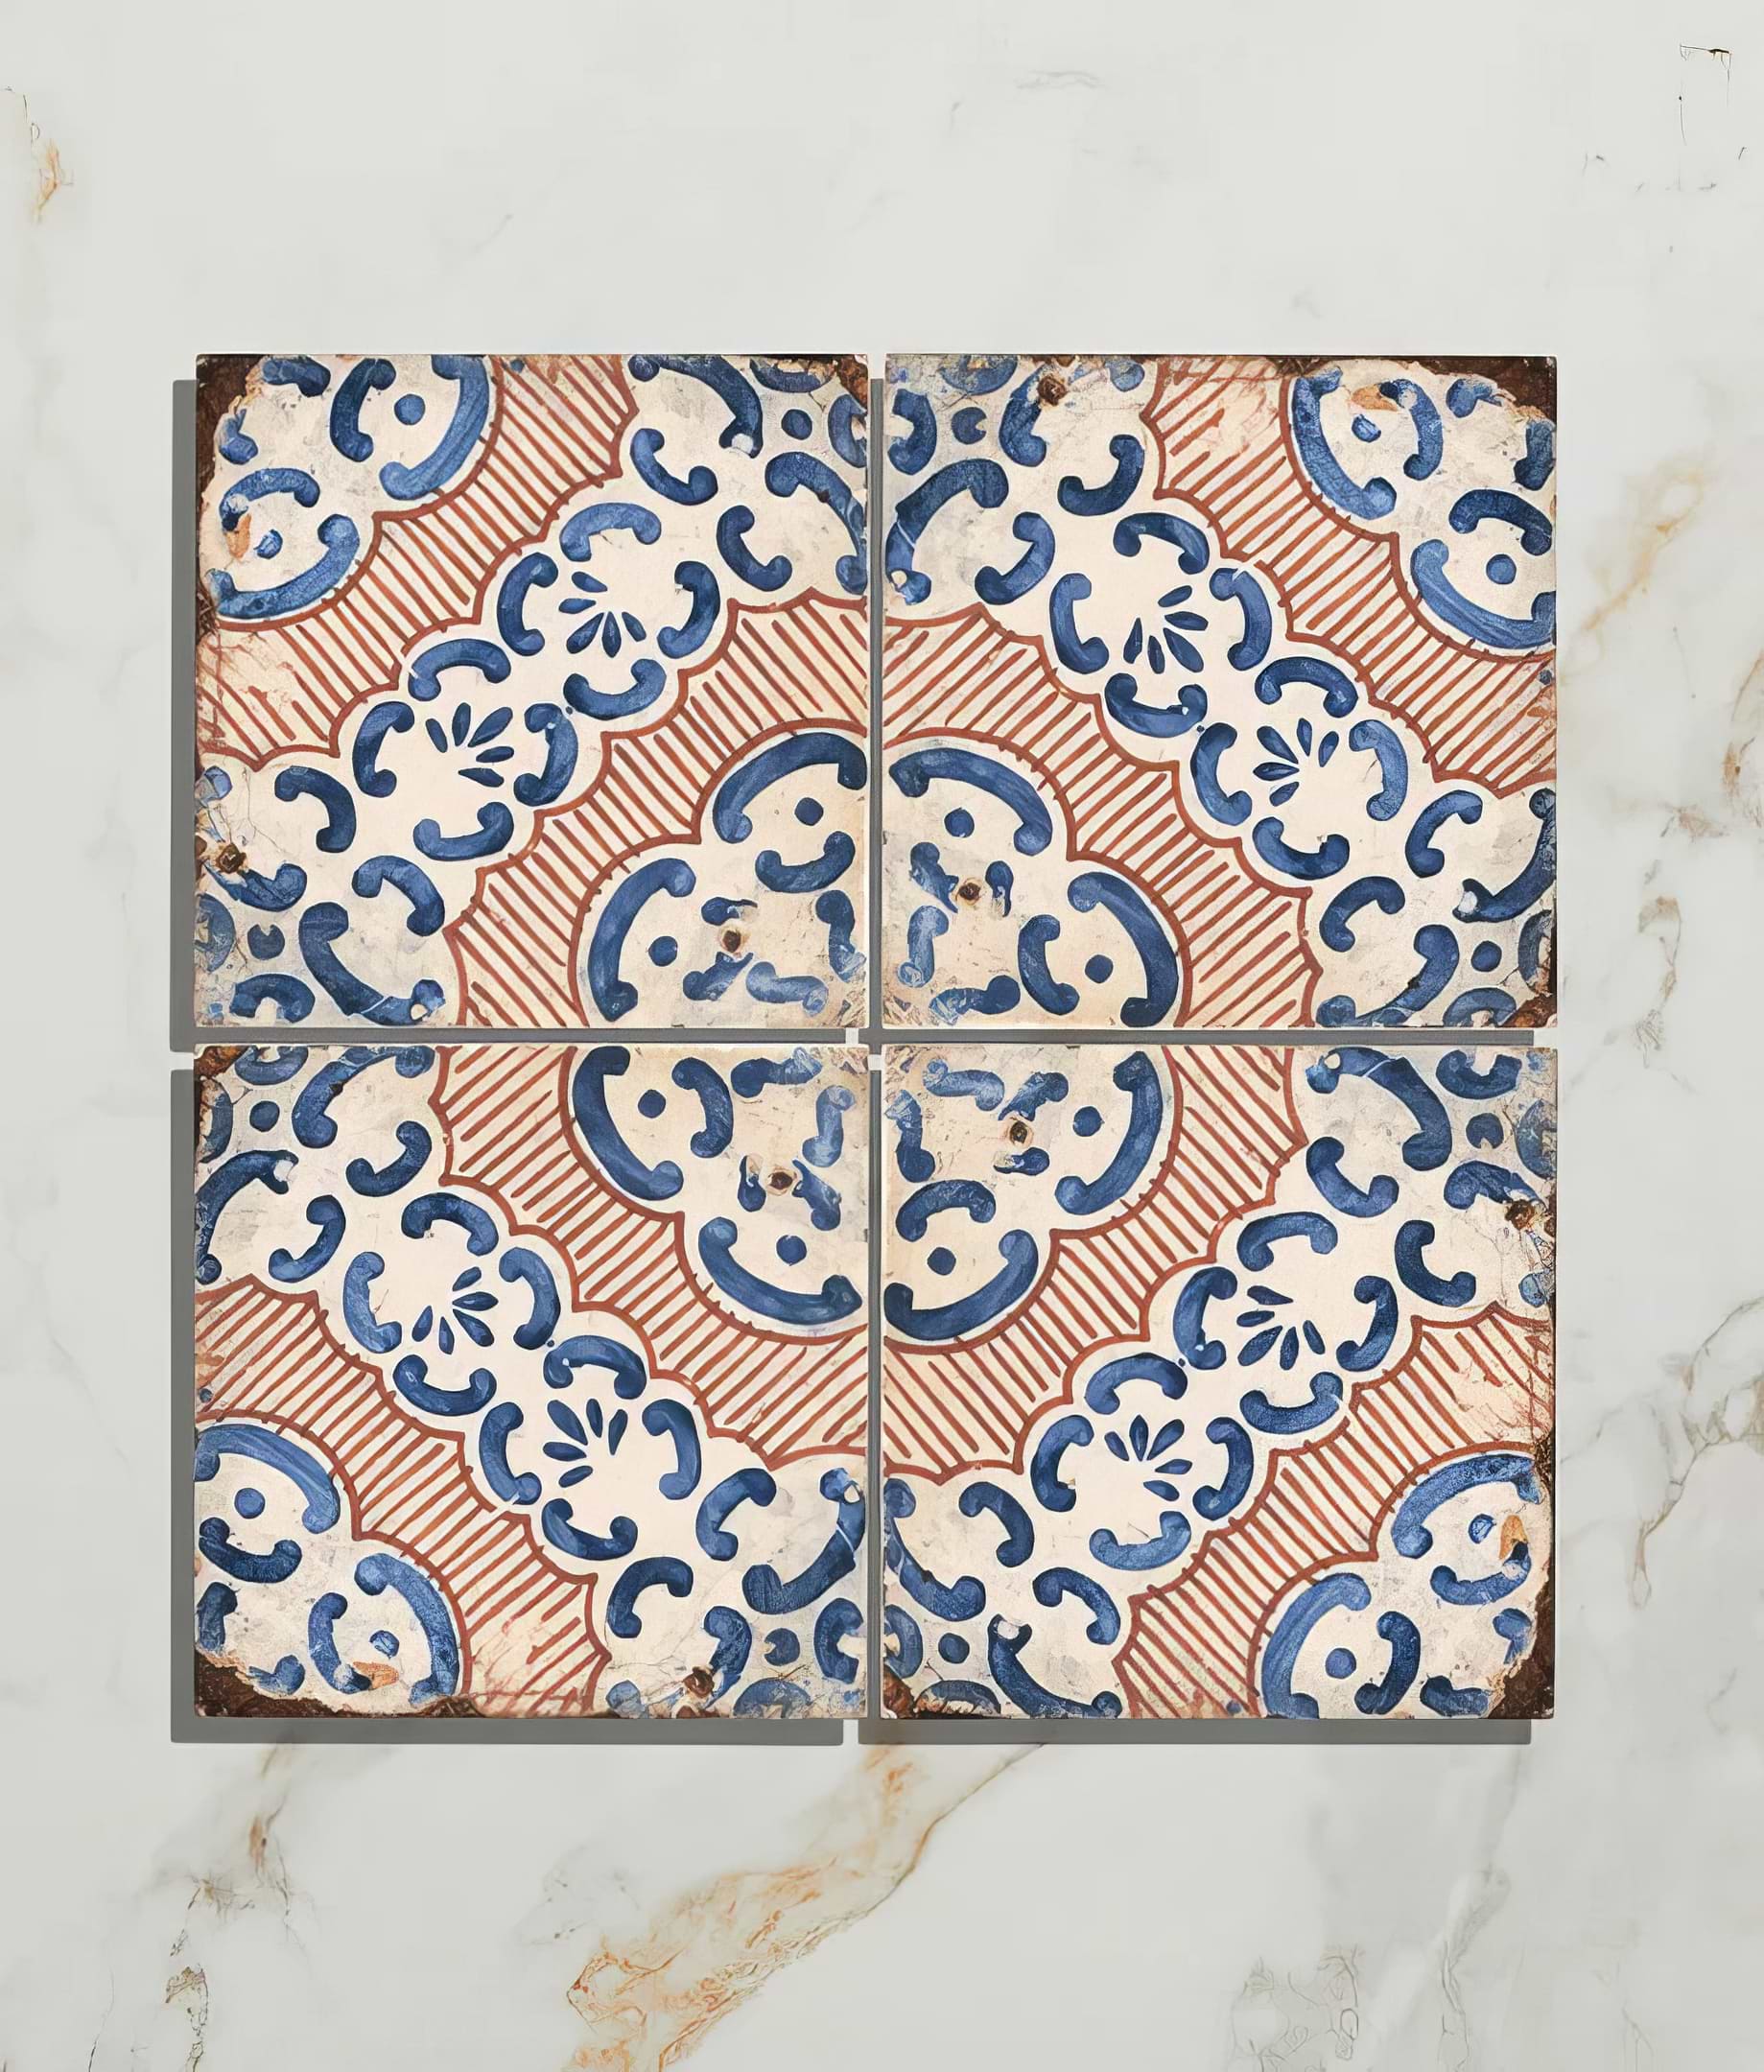 Sardinia Porcelain Masseria - Hyperion Tiles